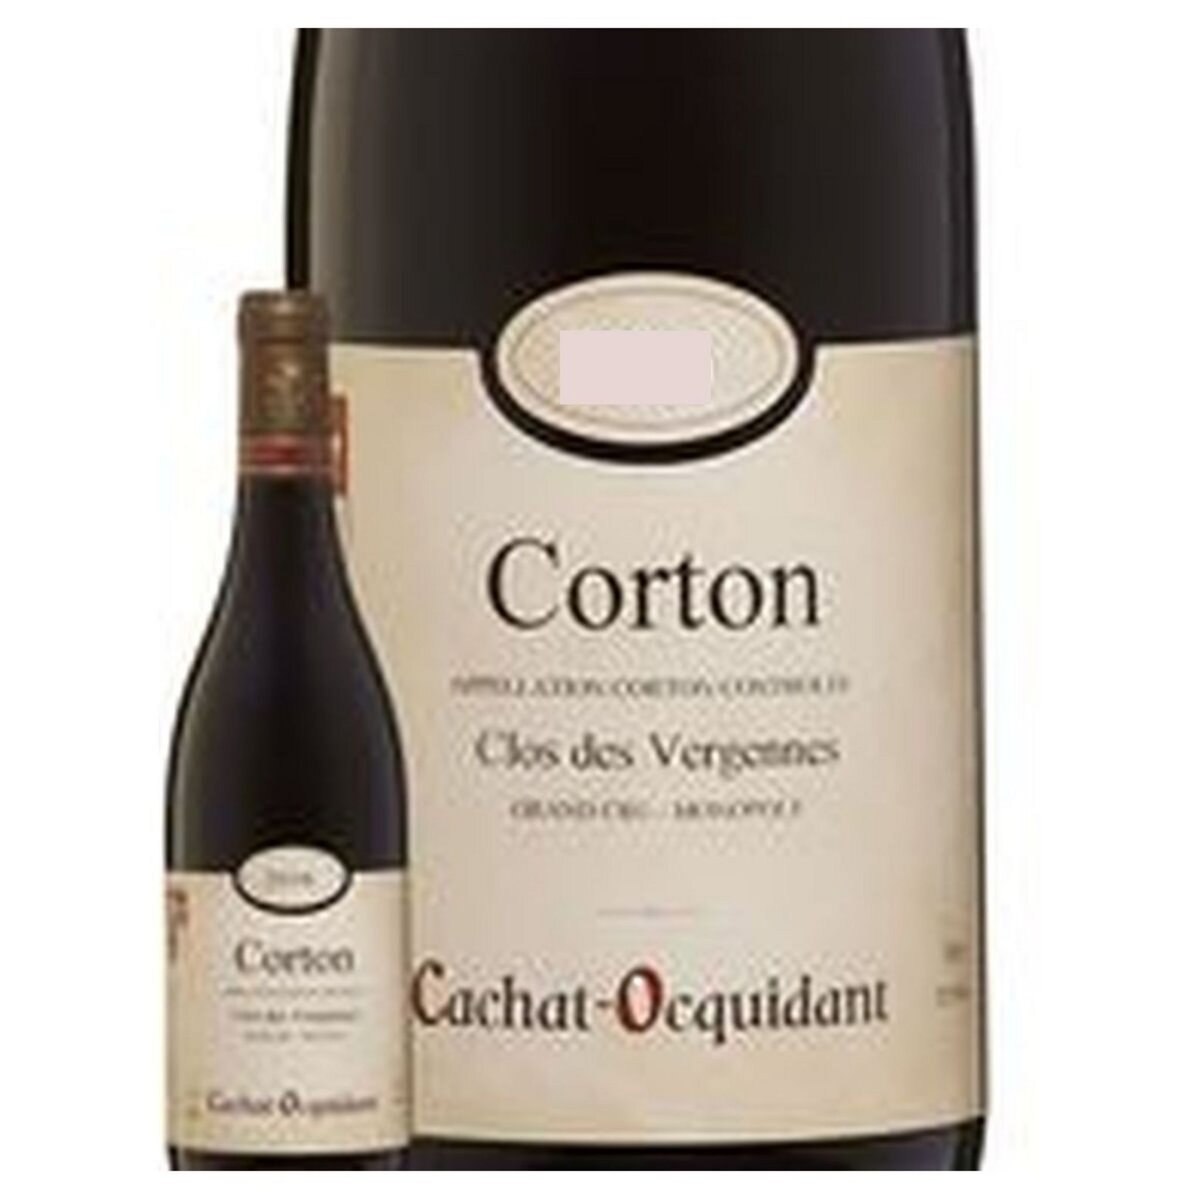 Vin rouge AOP Corton Domaine Cachat-Ocquidant vieilles vignes grand cru 2017 75cl